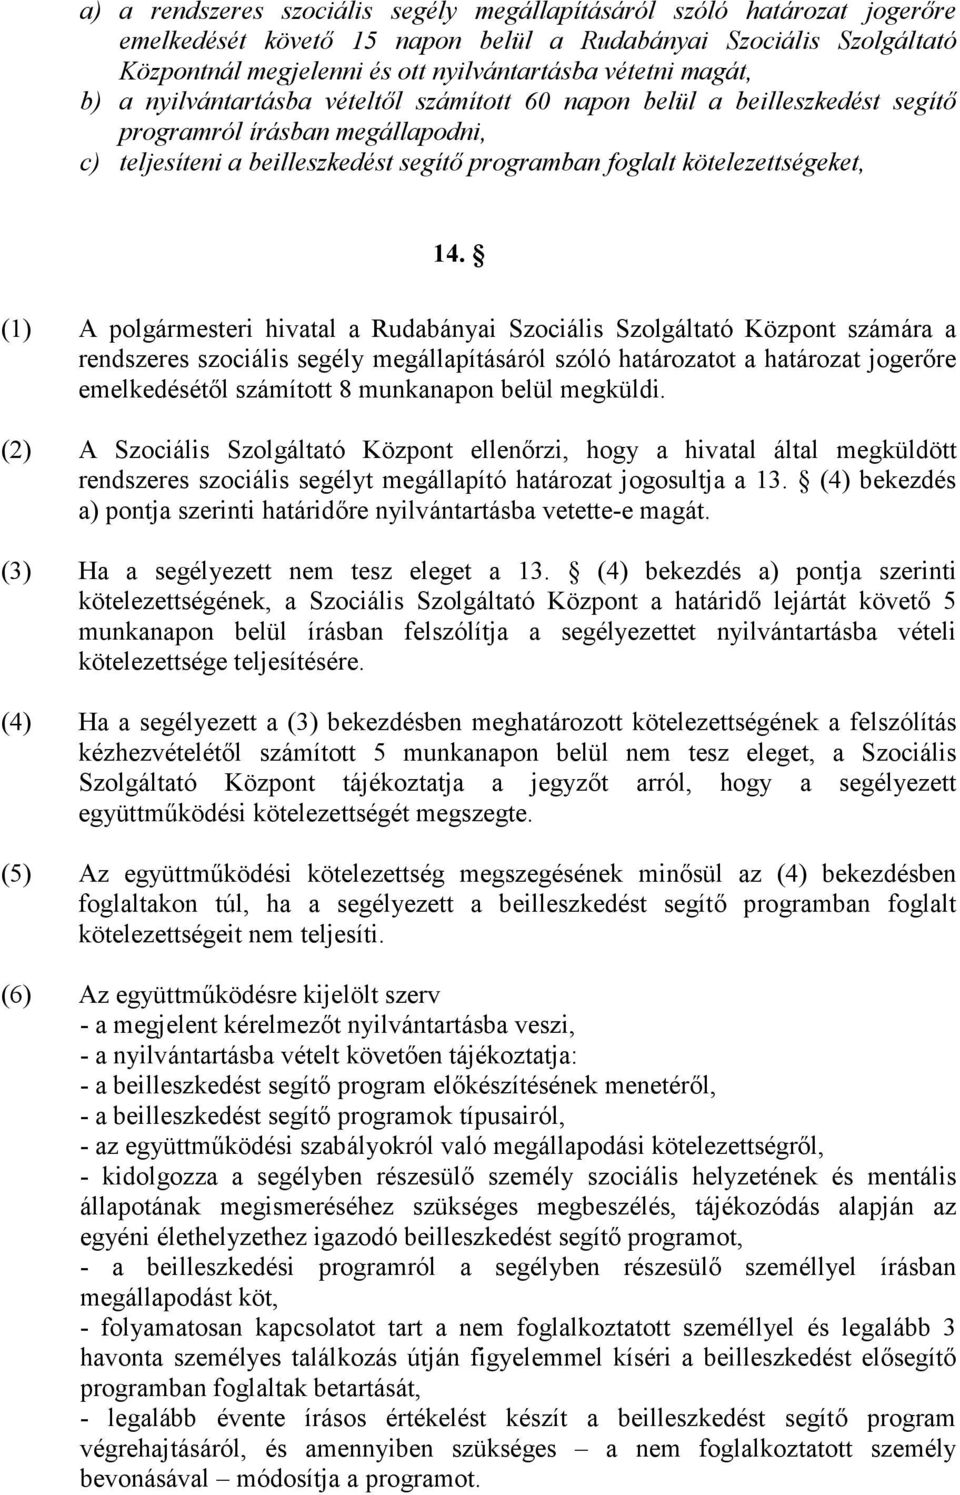 (1) A polgármesteri hivatal a Rudabányai Szociális Szolgáltató Központ számára a rendszeres szociális segély megállapításáról szóló határozatot a határozat jogerıre emelkedésétıl számított 8